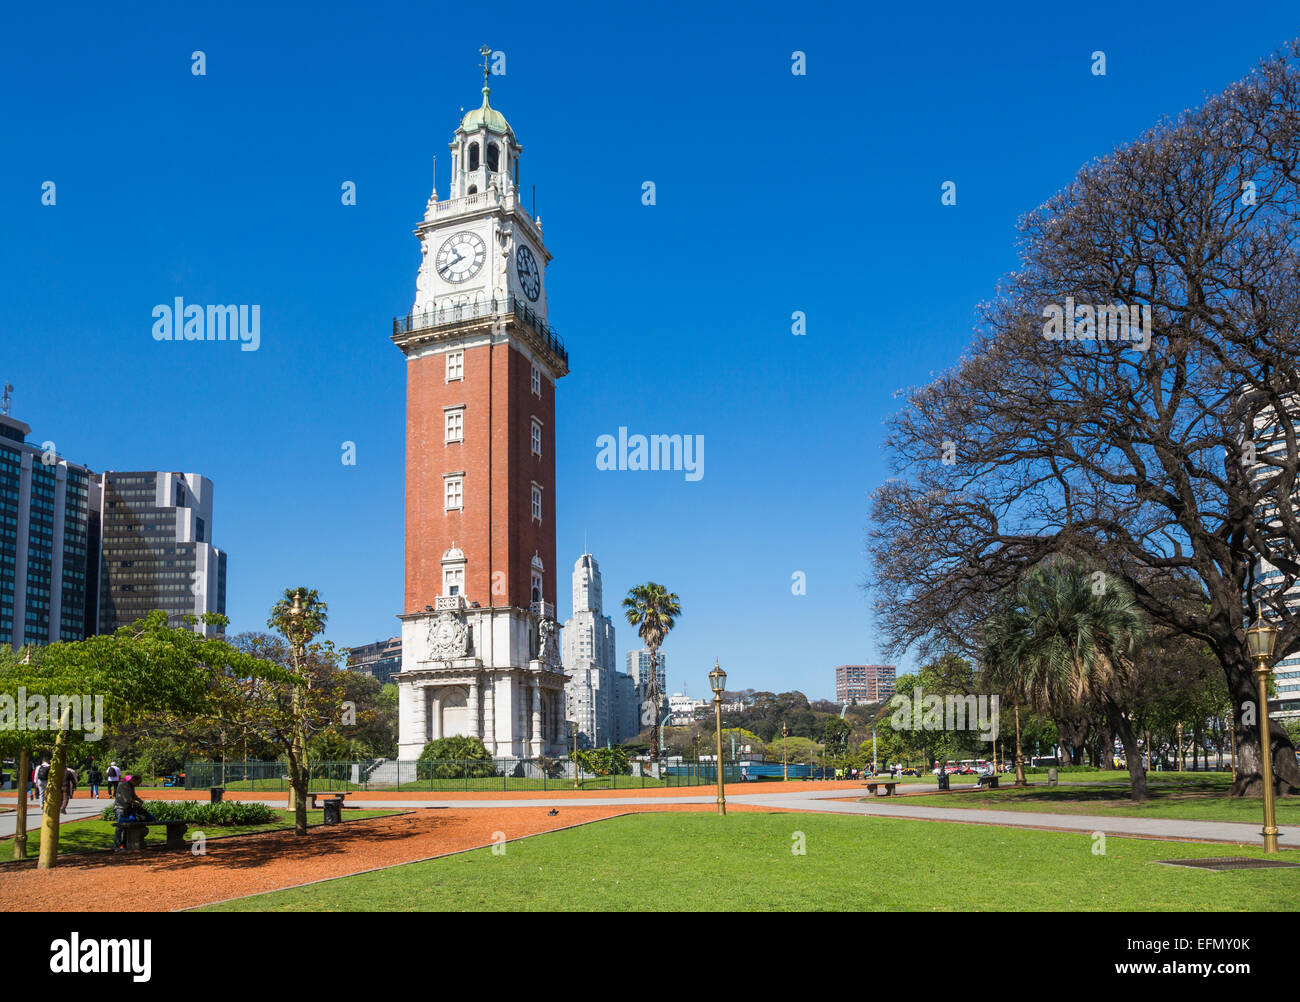 Torre Monumental, ehemals Torre de los Ingleses (Turm der Englischen), Plaza Fuerza Aérea, ein Wahrzeichen in der Innenstadt von Buenos Aires, Argentinien Stockfoto